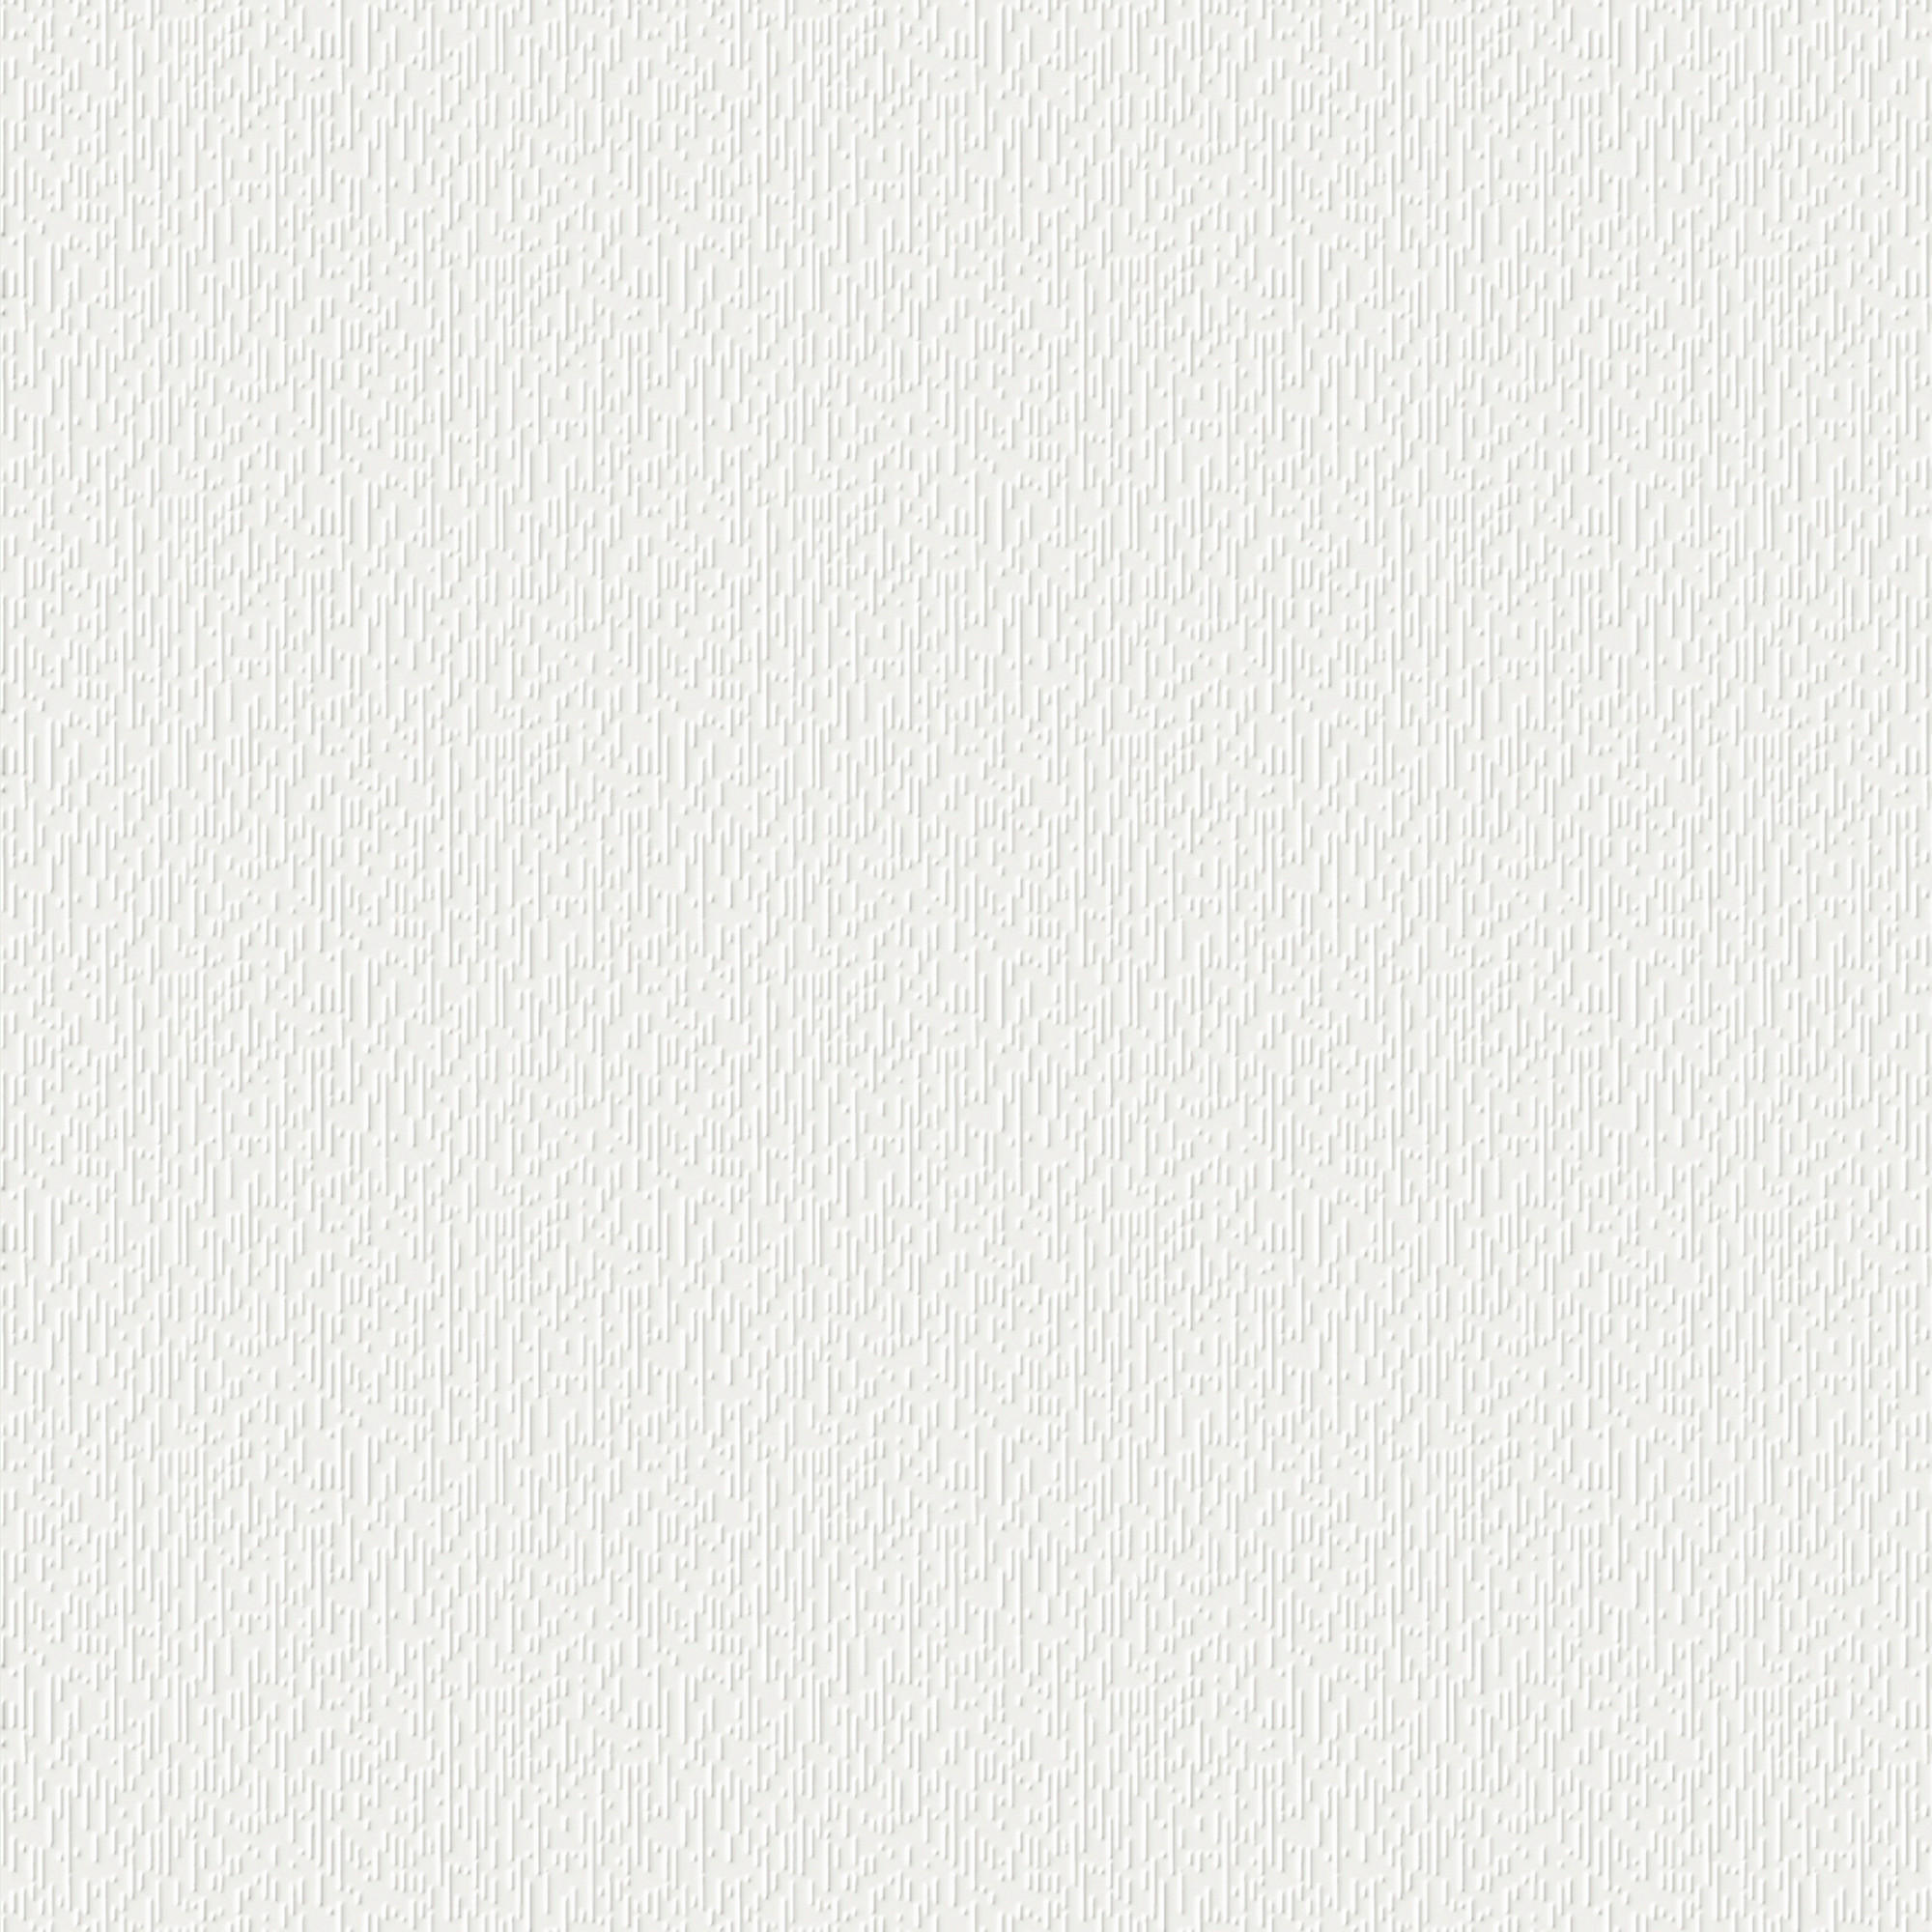 VLIESTAPETE  - Weiß, Basics, Papier/Kunststoff (52/1005cm)